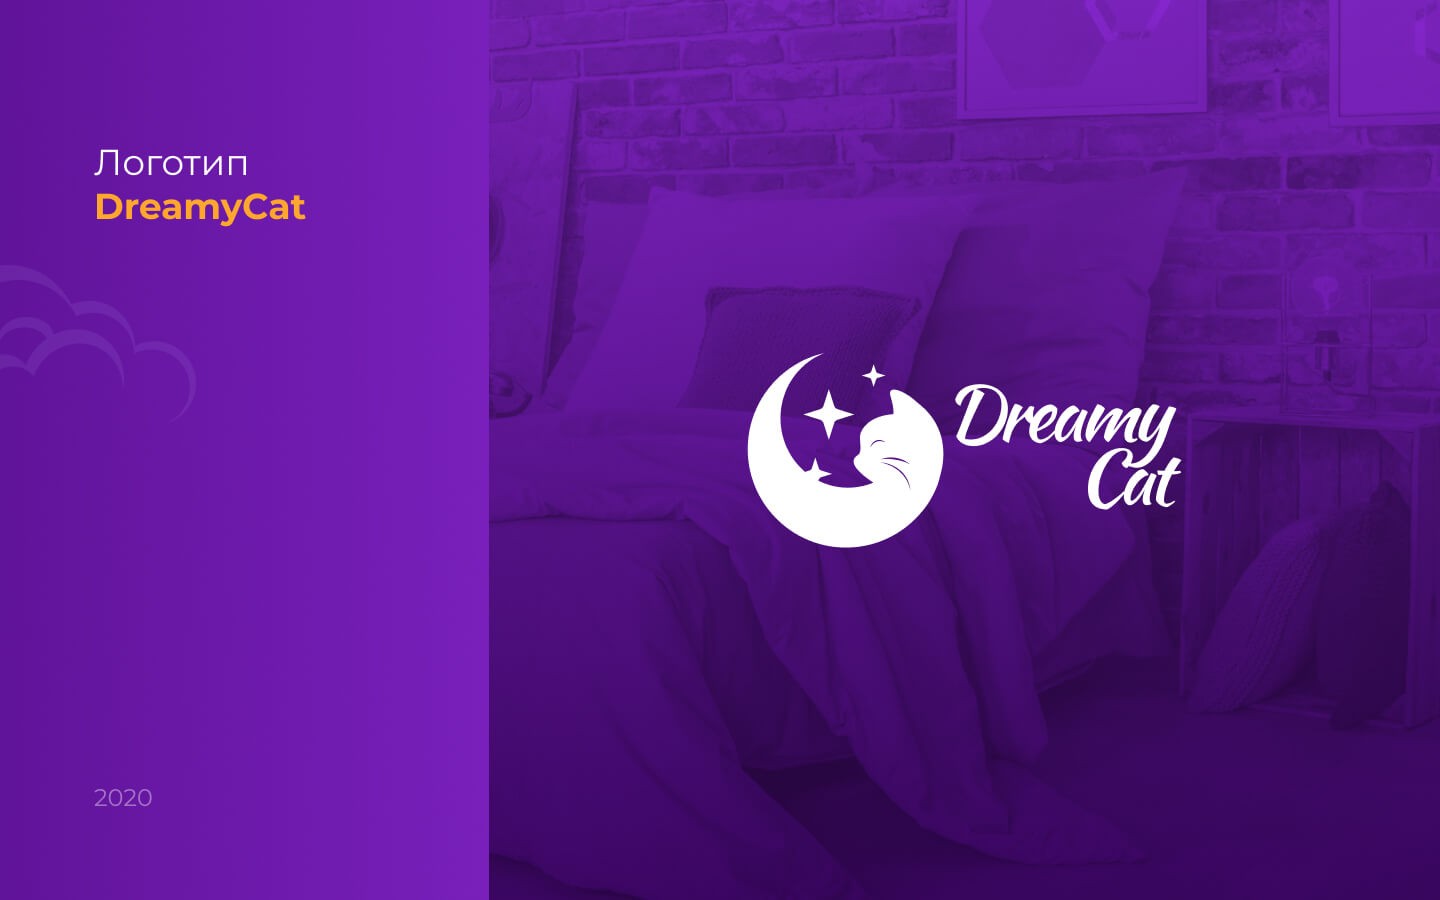 DreamyCat_logo_01